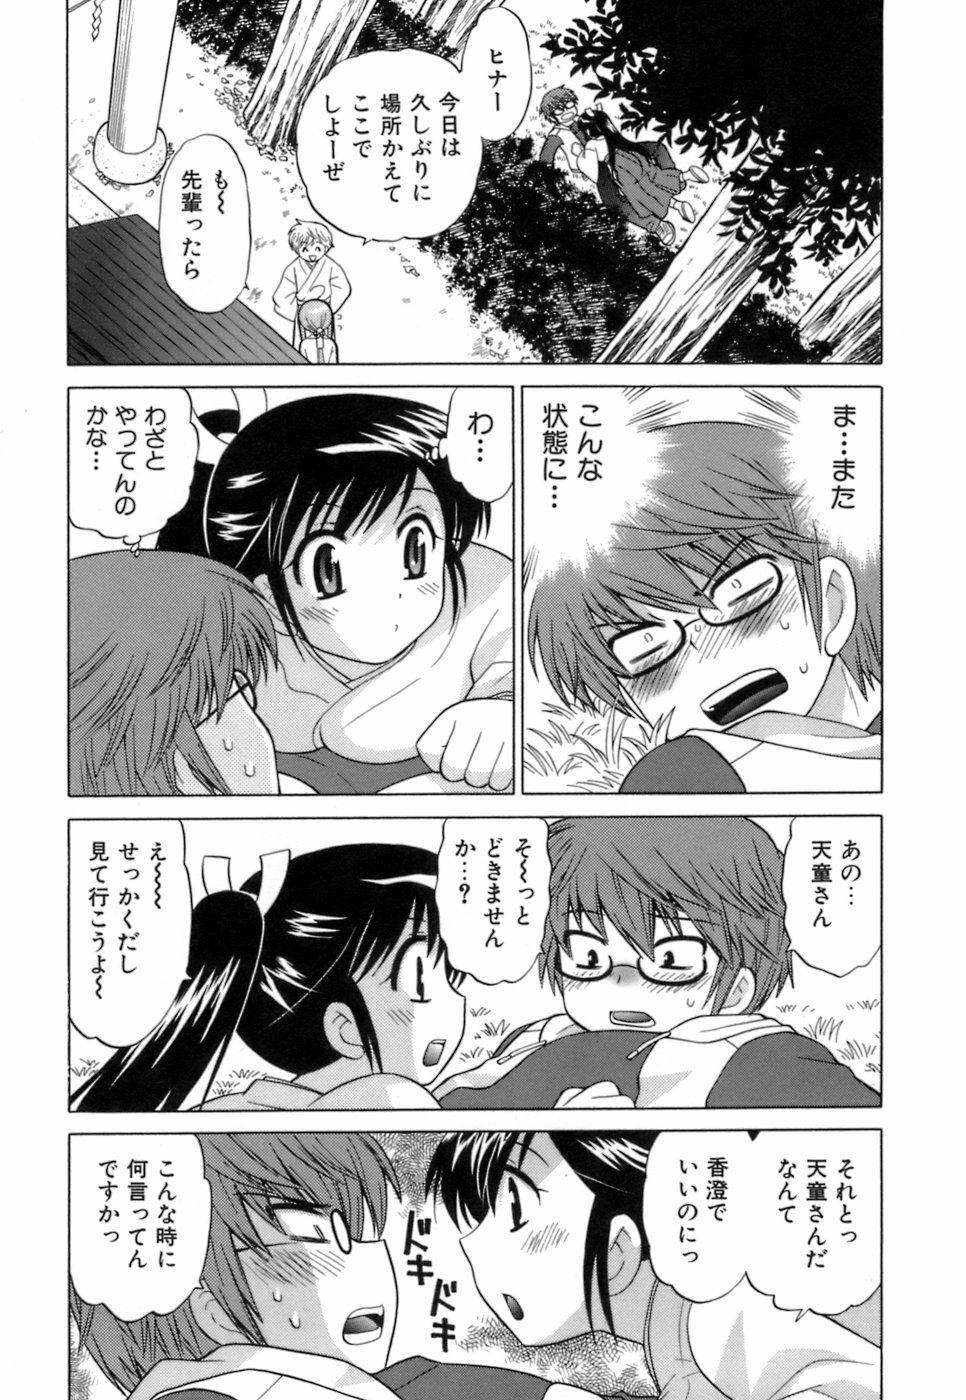 [Kotono Wakako] Miko Moe 1 page 39 full